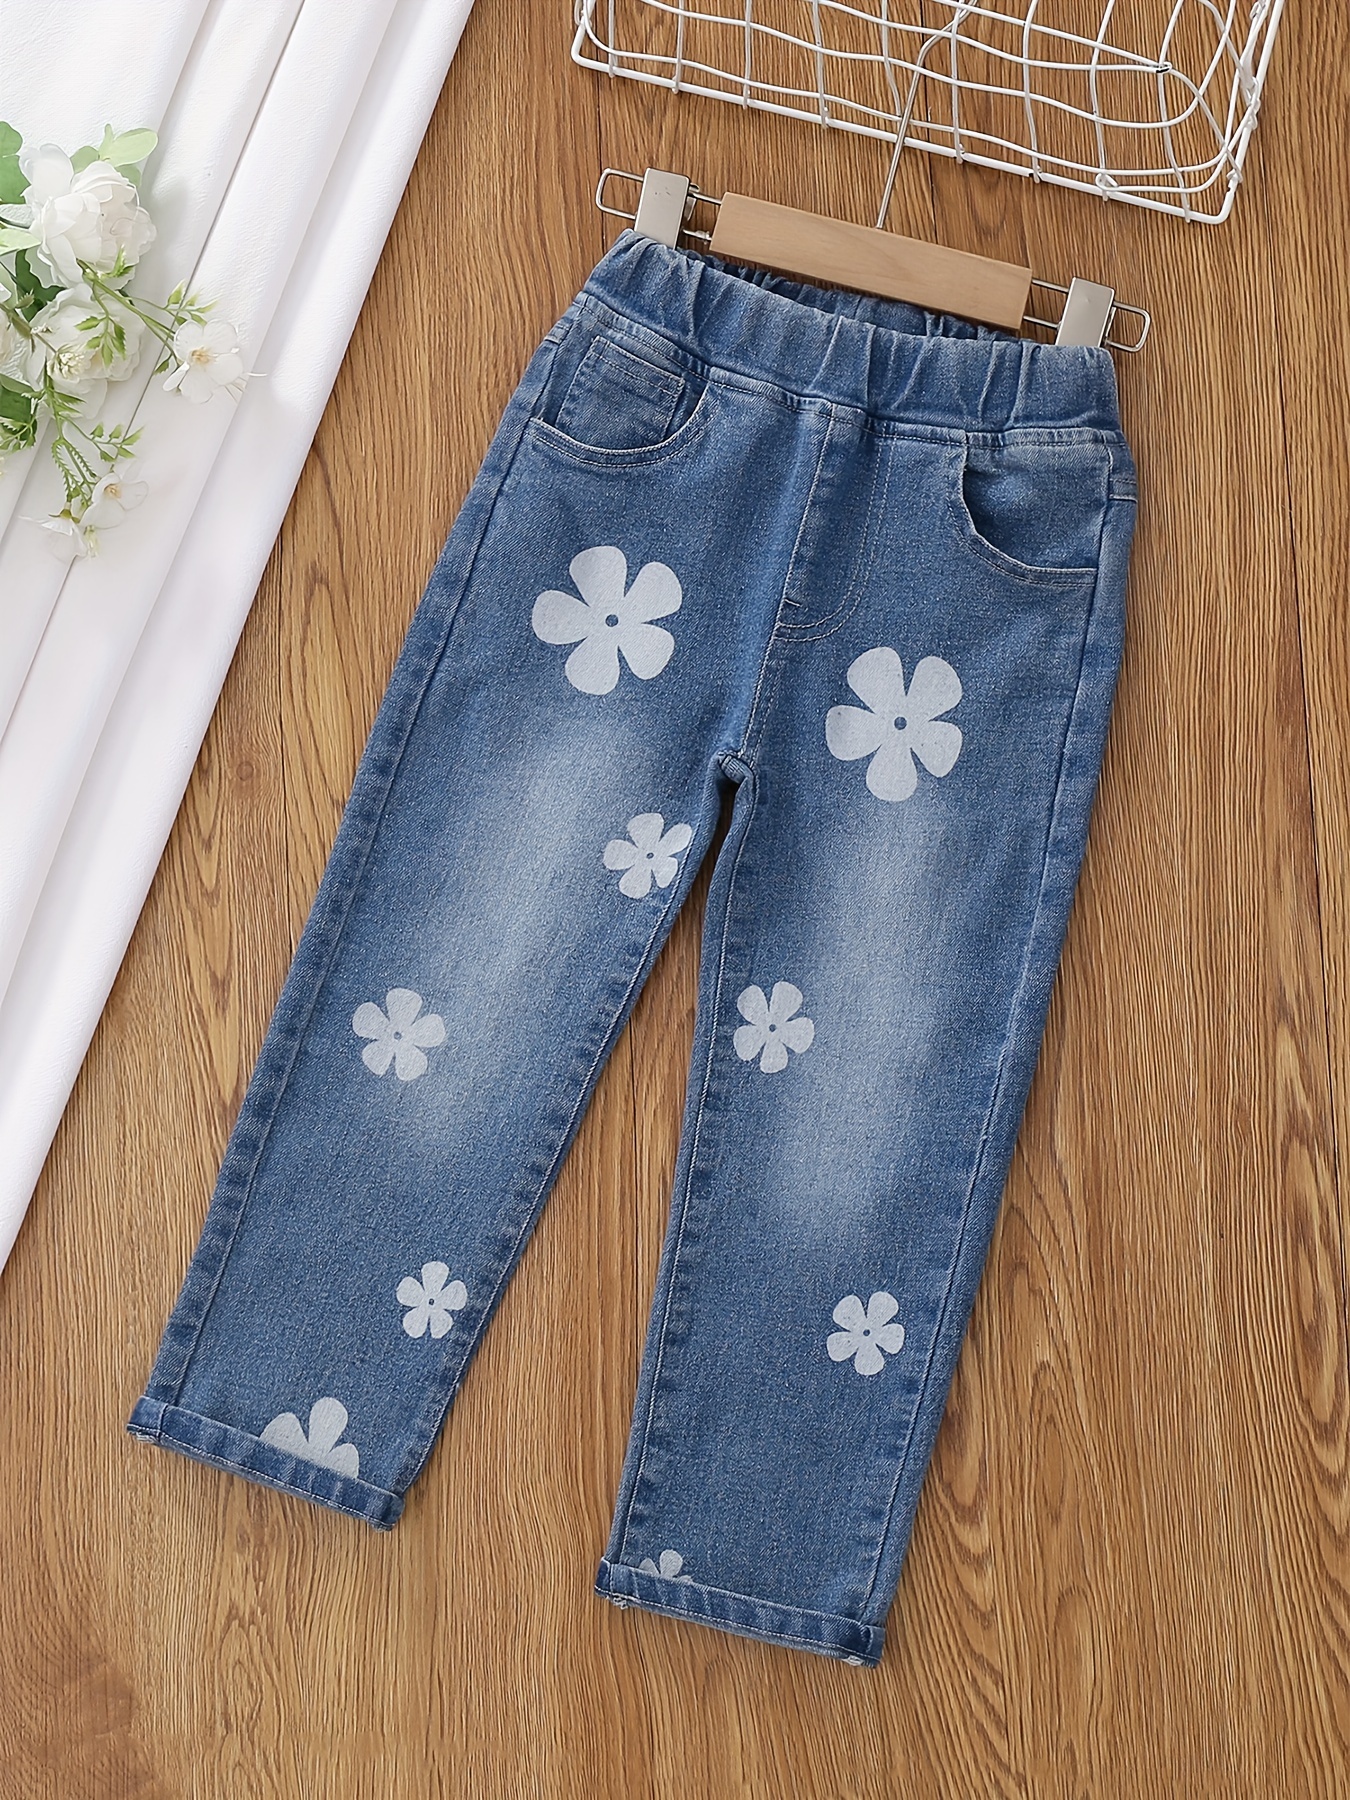 Cute Jeans For Girls - Temu Canada